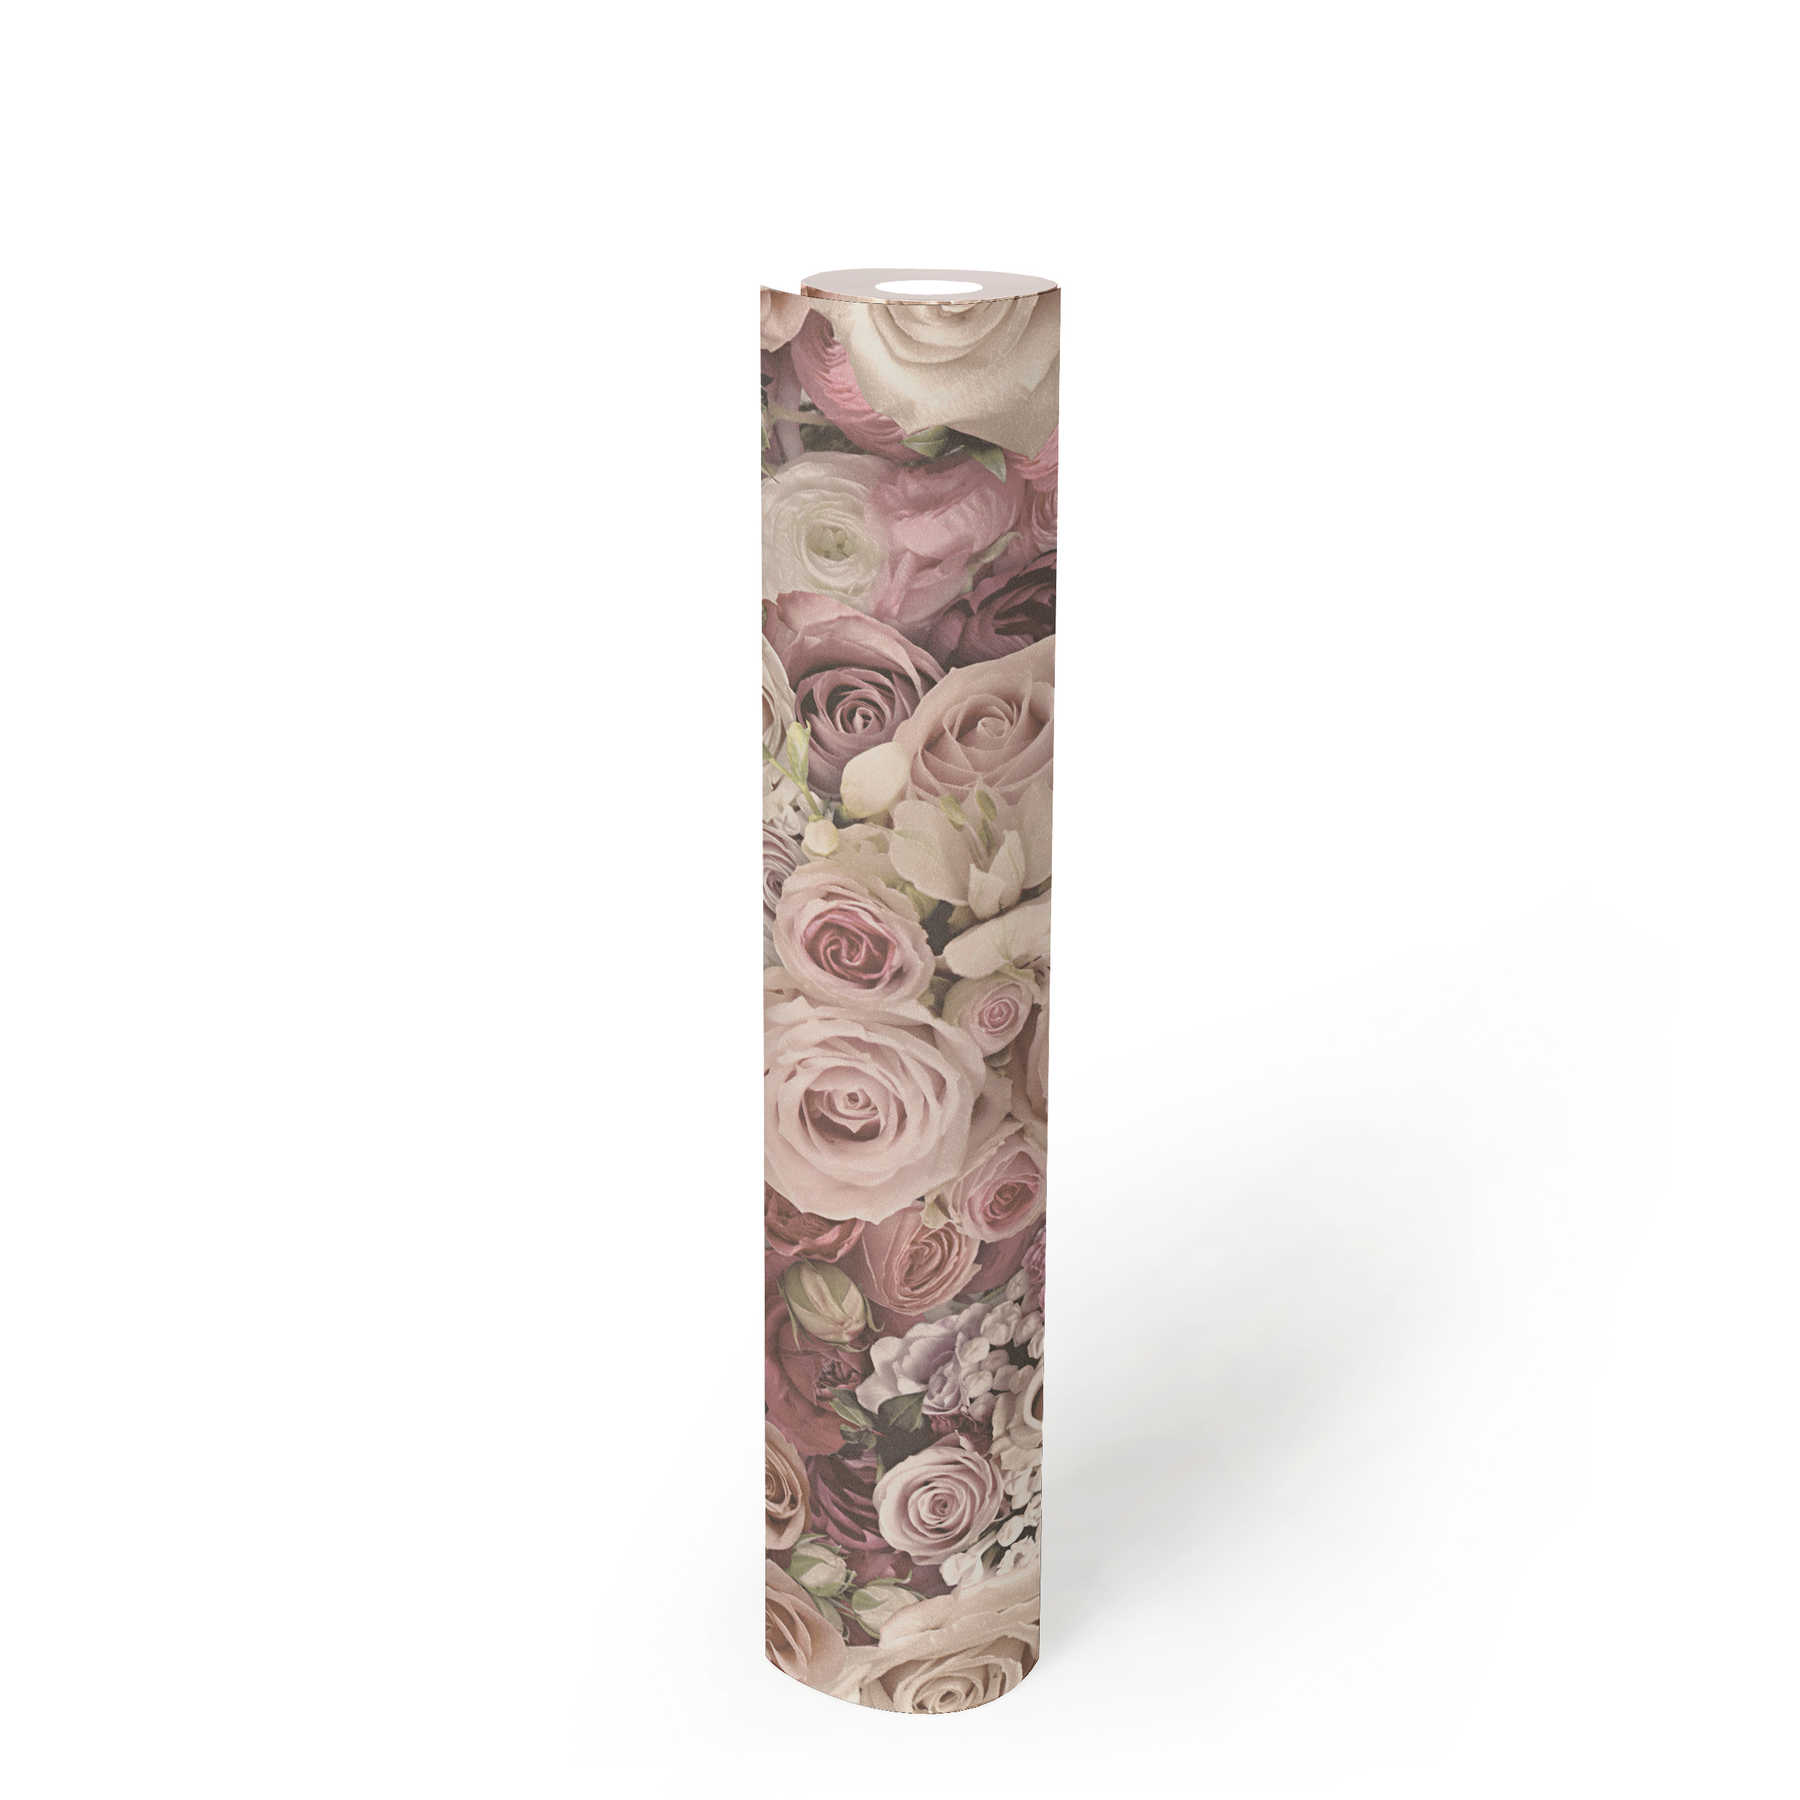             behang rozen in delicate roze bloemenzee - crème
        